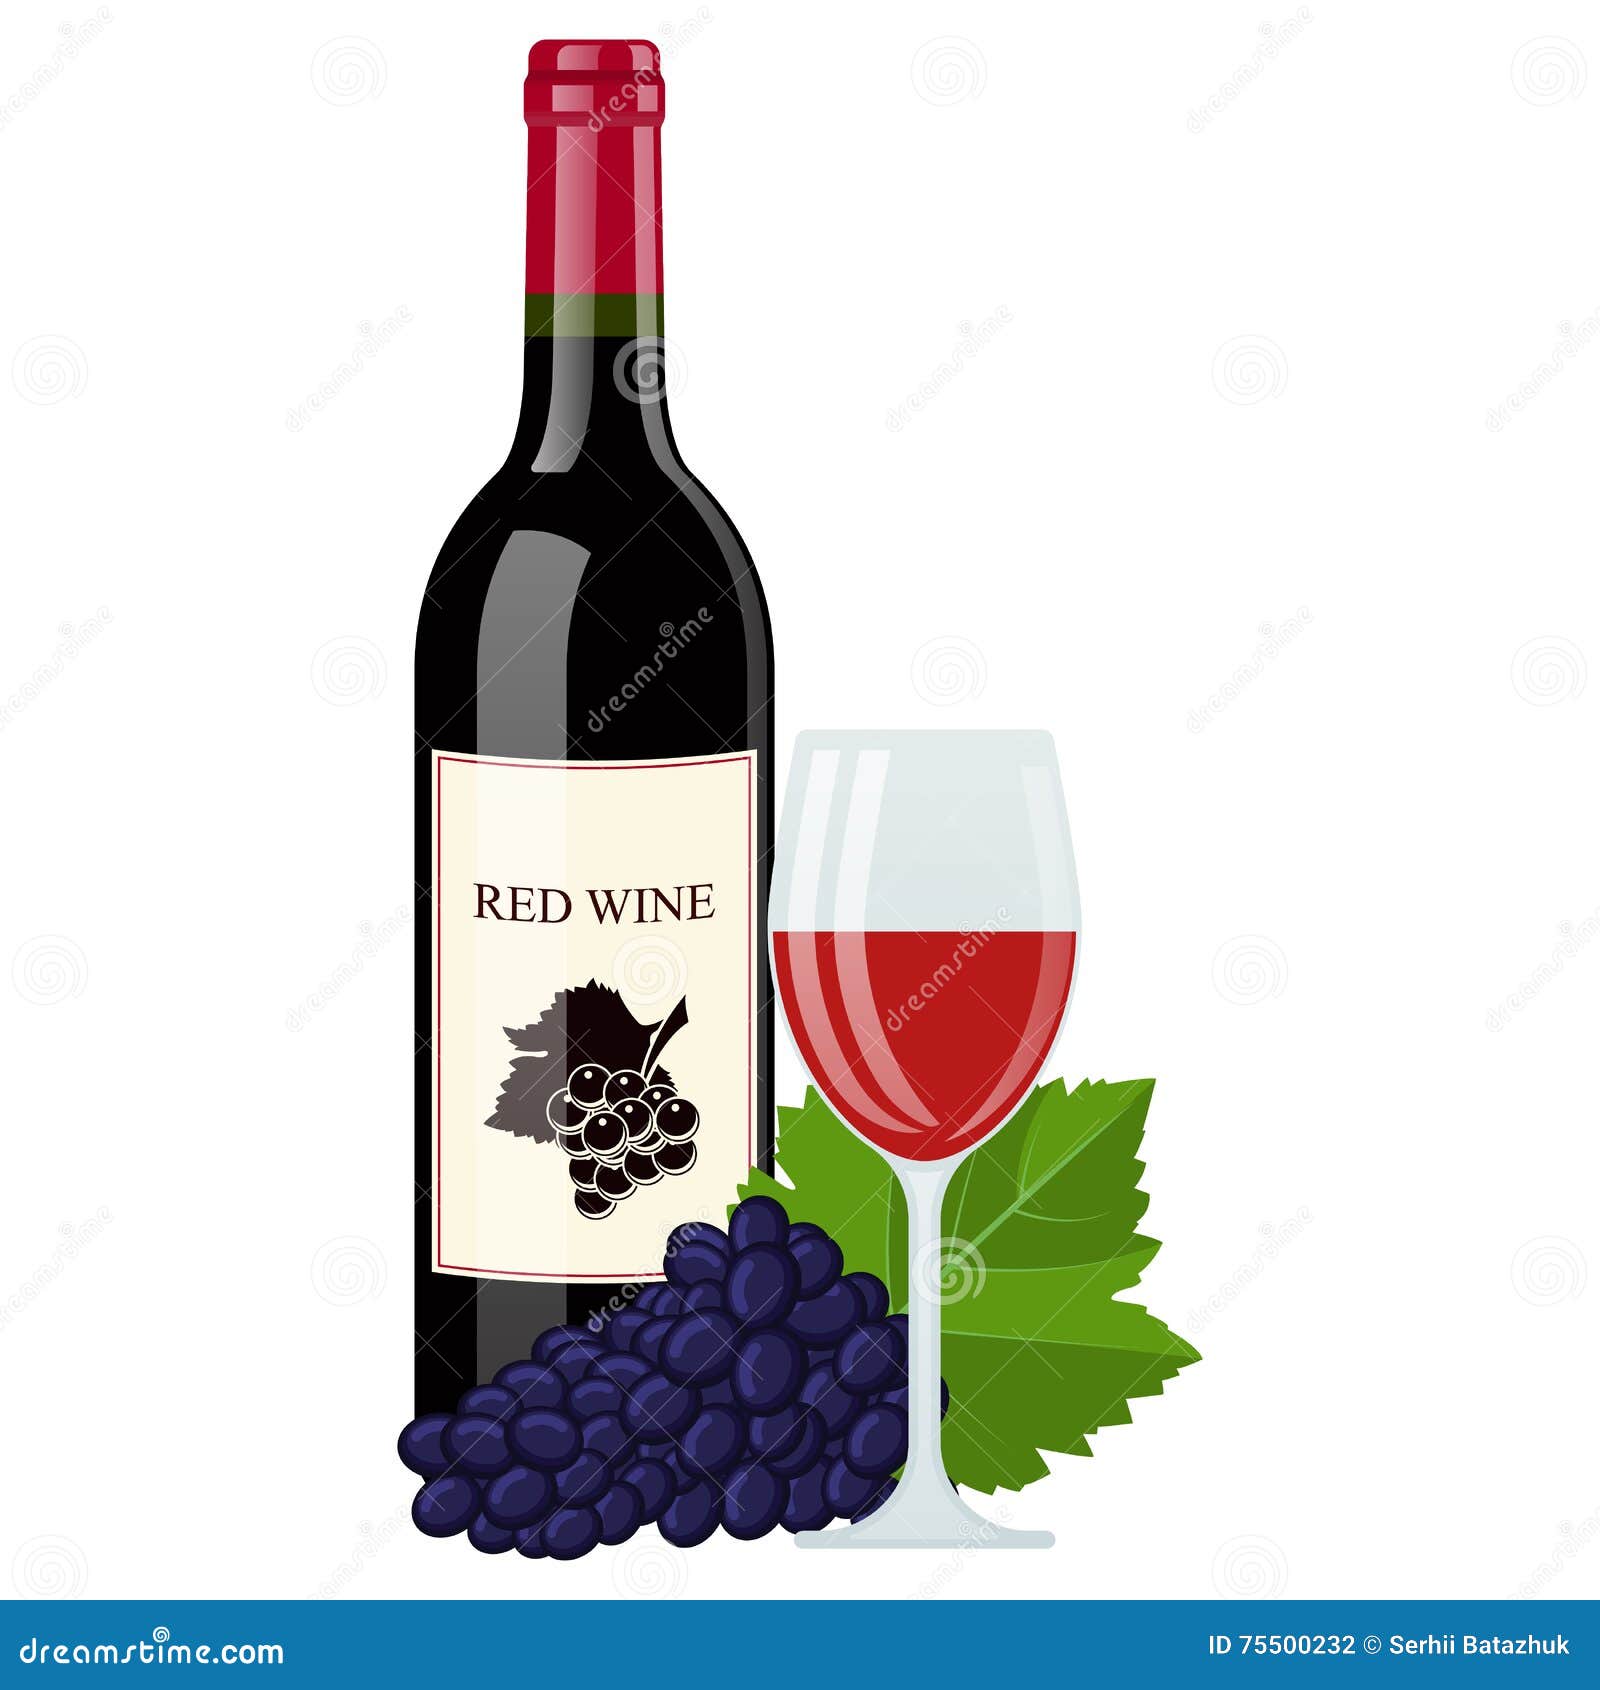 Wijnfles Met Glas En Druivenbladeren Stock Illustratie - Illustration ...